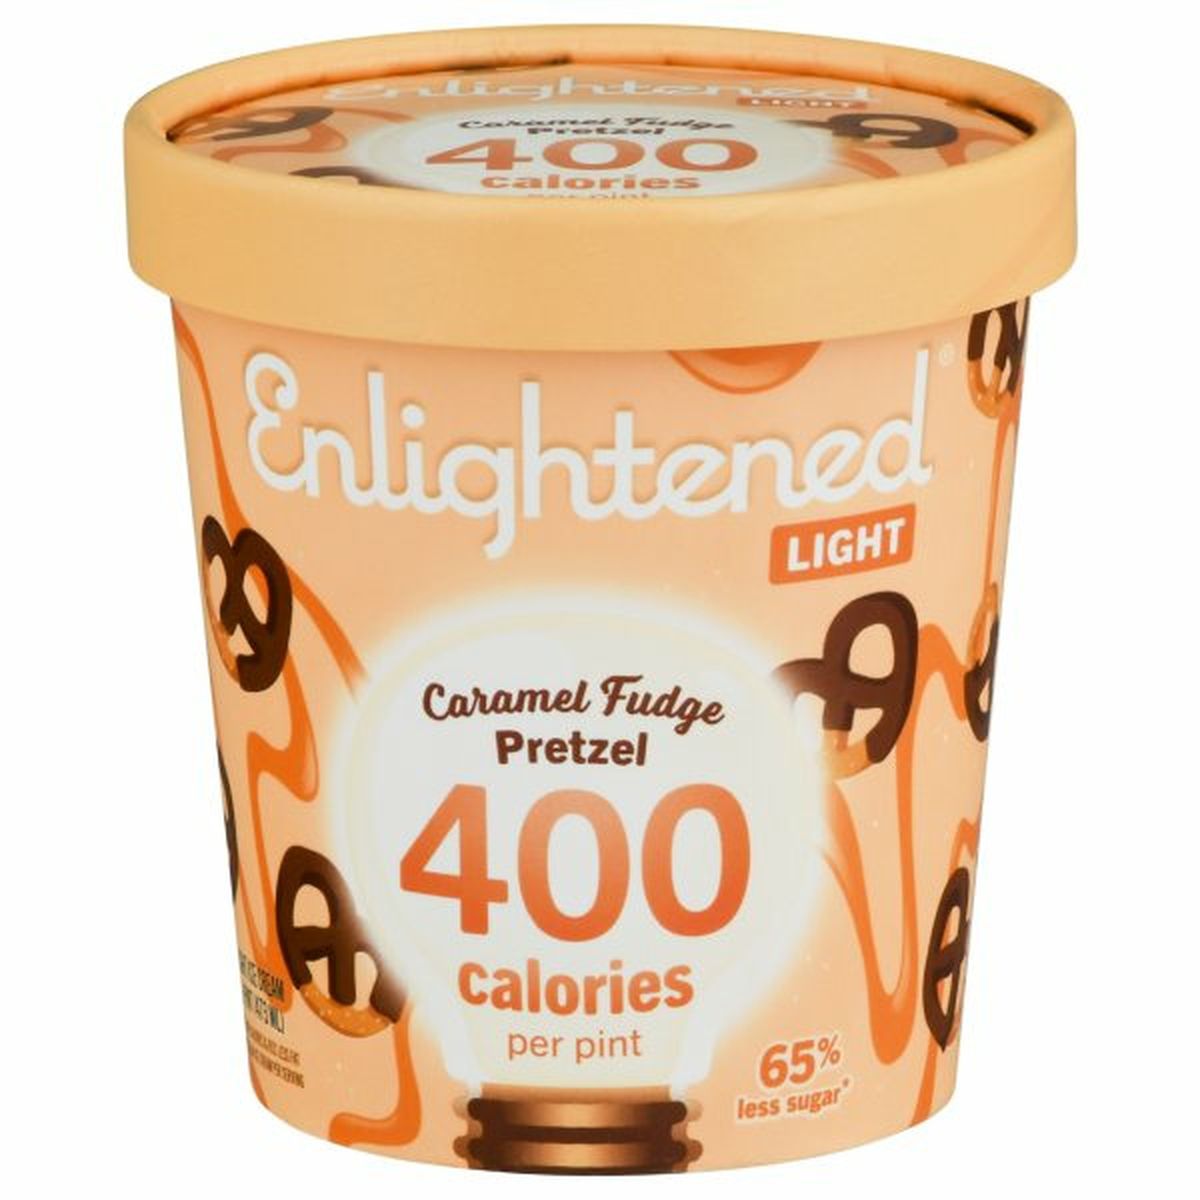 Calories in Enlightened Ice Cream, Caramel Fudge Pretzel, Light